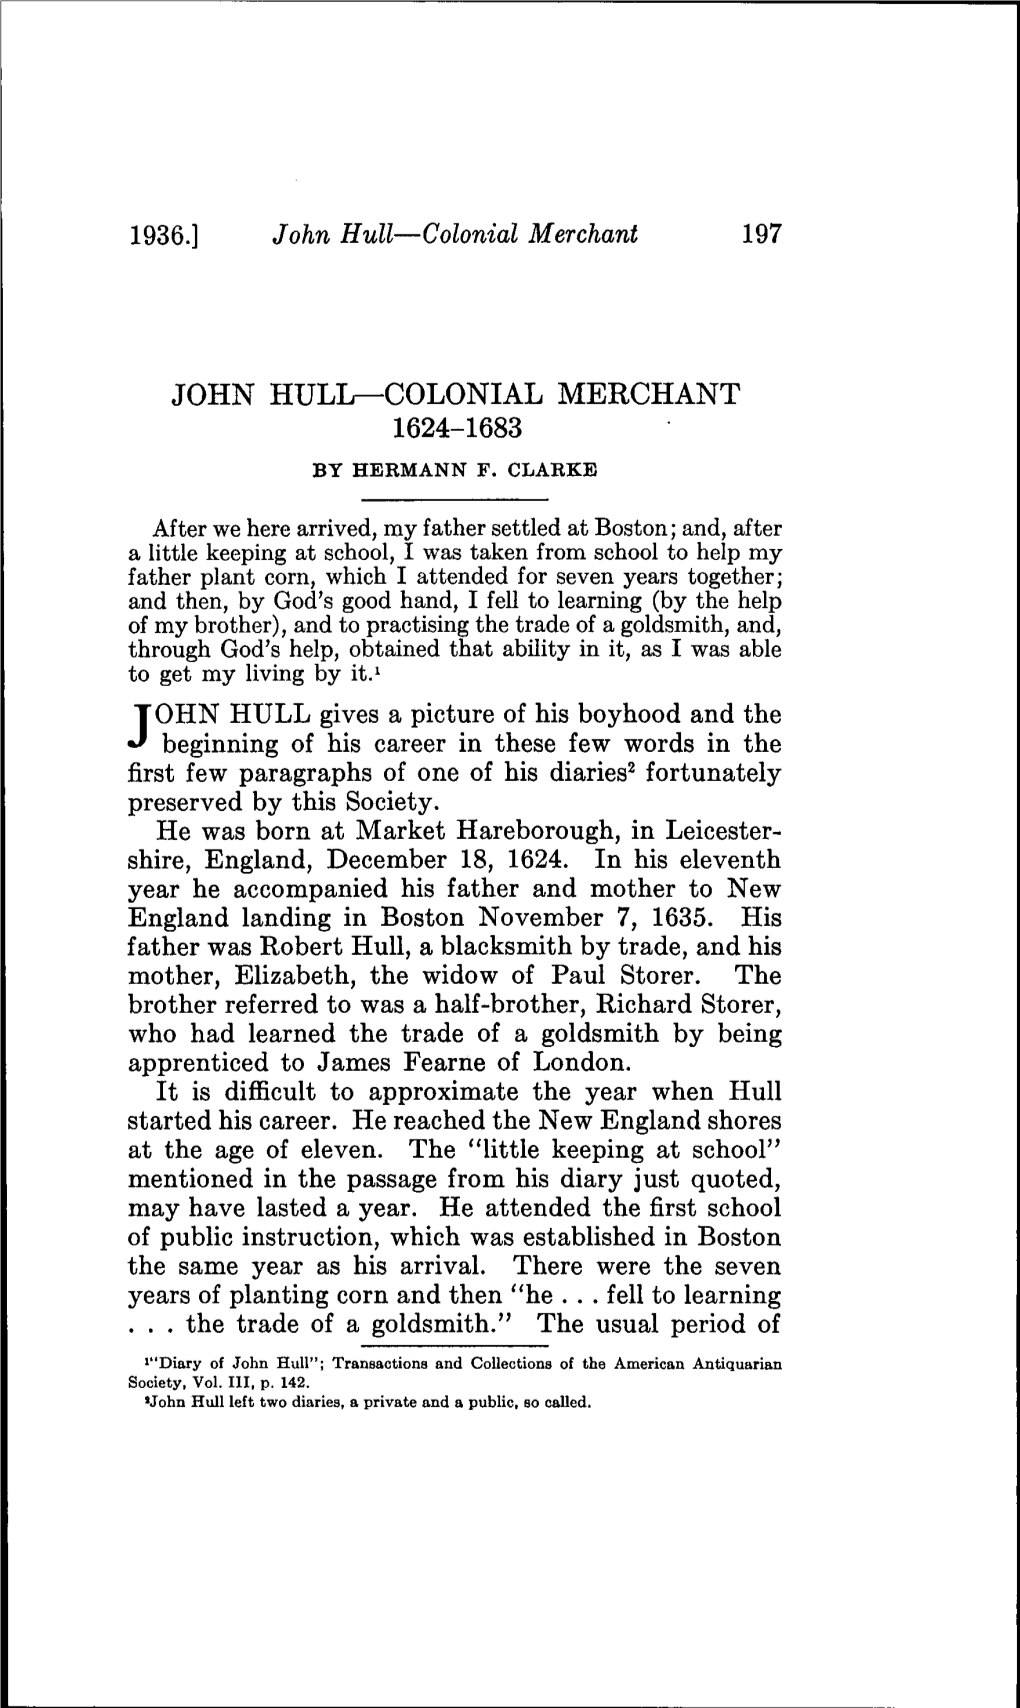 John Hull—Colonial Merchant 1624-1683 by Hermann F